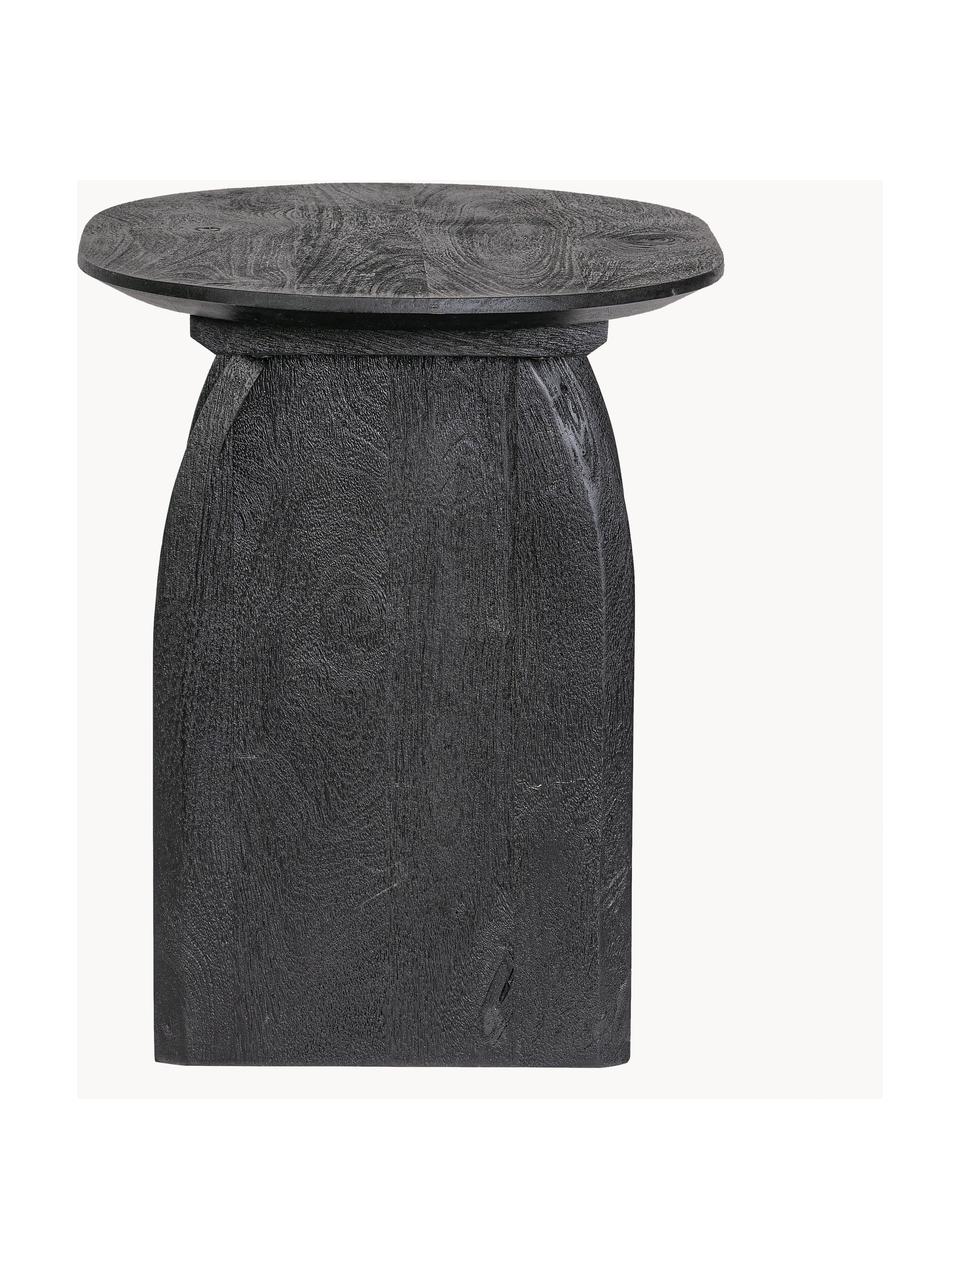 Oválny odkladací stolík z mangového dreva Monterrey, Mangové drevo, Mangové drevo, čierne lakované, Š 60 x V 56 cm